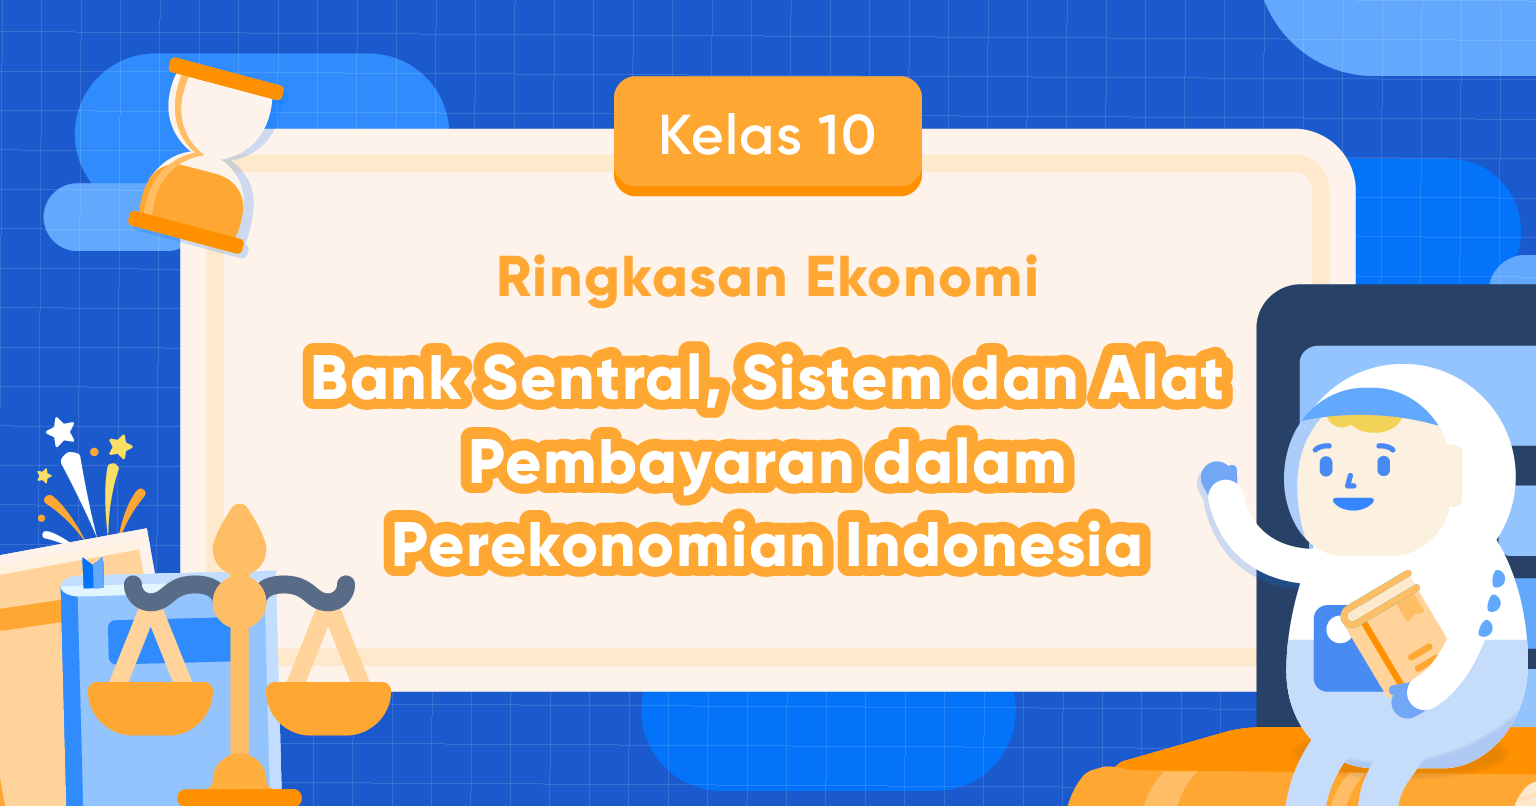 Bank Sentral, Sistem dan Alat Pembayaran dalam Perekonomian Indonesia